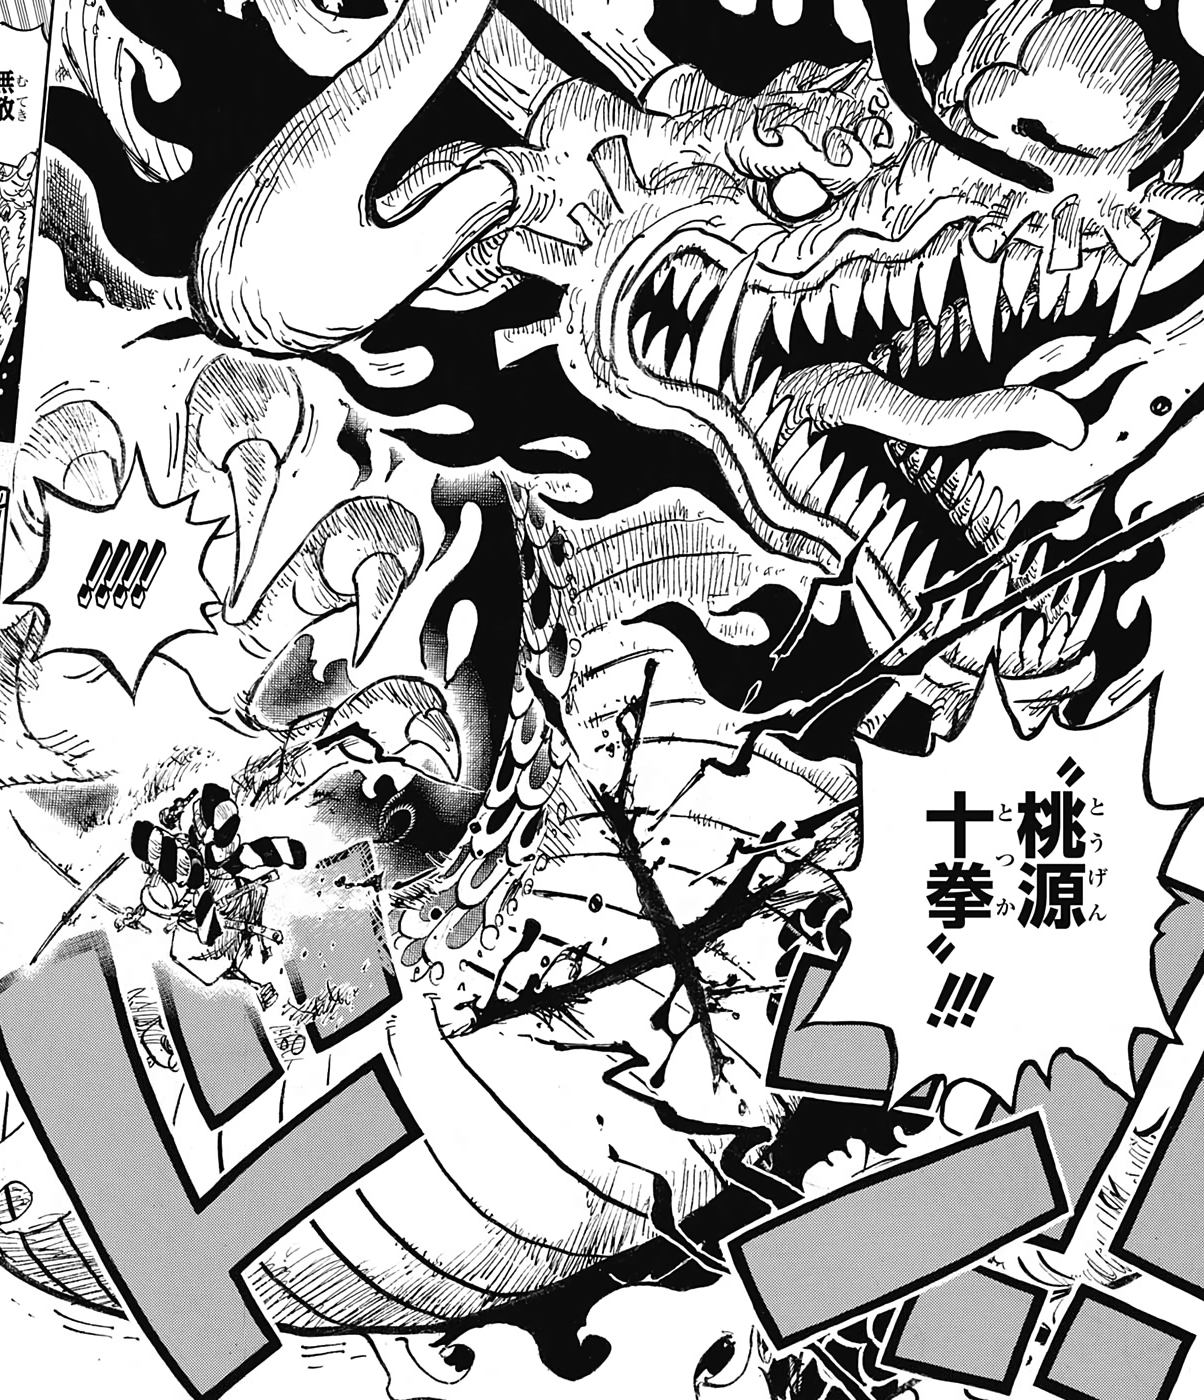 Kiếm Enma trong One Piece sẽ giúp bạn tìm hiểu về vũ khí cực mạnh của Kaido, một trong những trùm hải tặc đáng sợ nhất trong One Piece. Kiếm Enma có thể rút ra linh hồn và kiếm lực của người khác. Hãy xem hình ảnh liên quan để tìm hiểu thêm về Kiếm Enma trong One Piece.